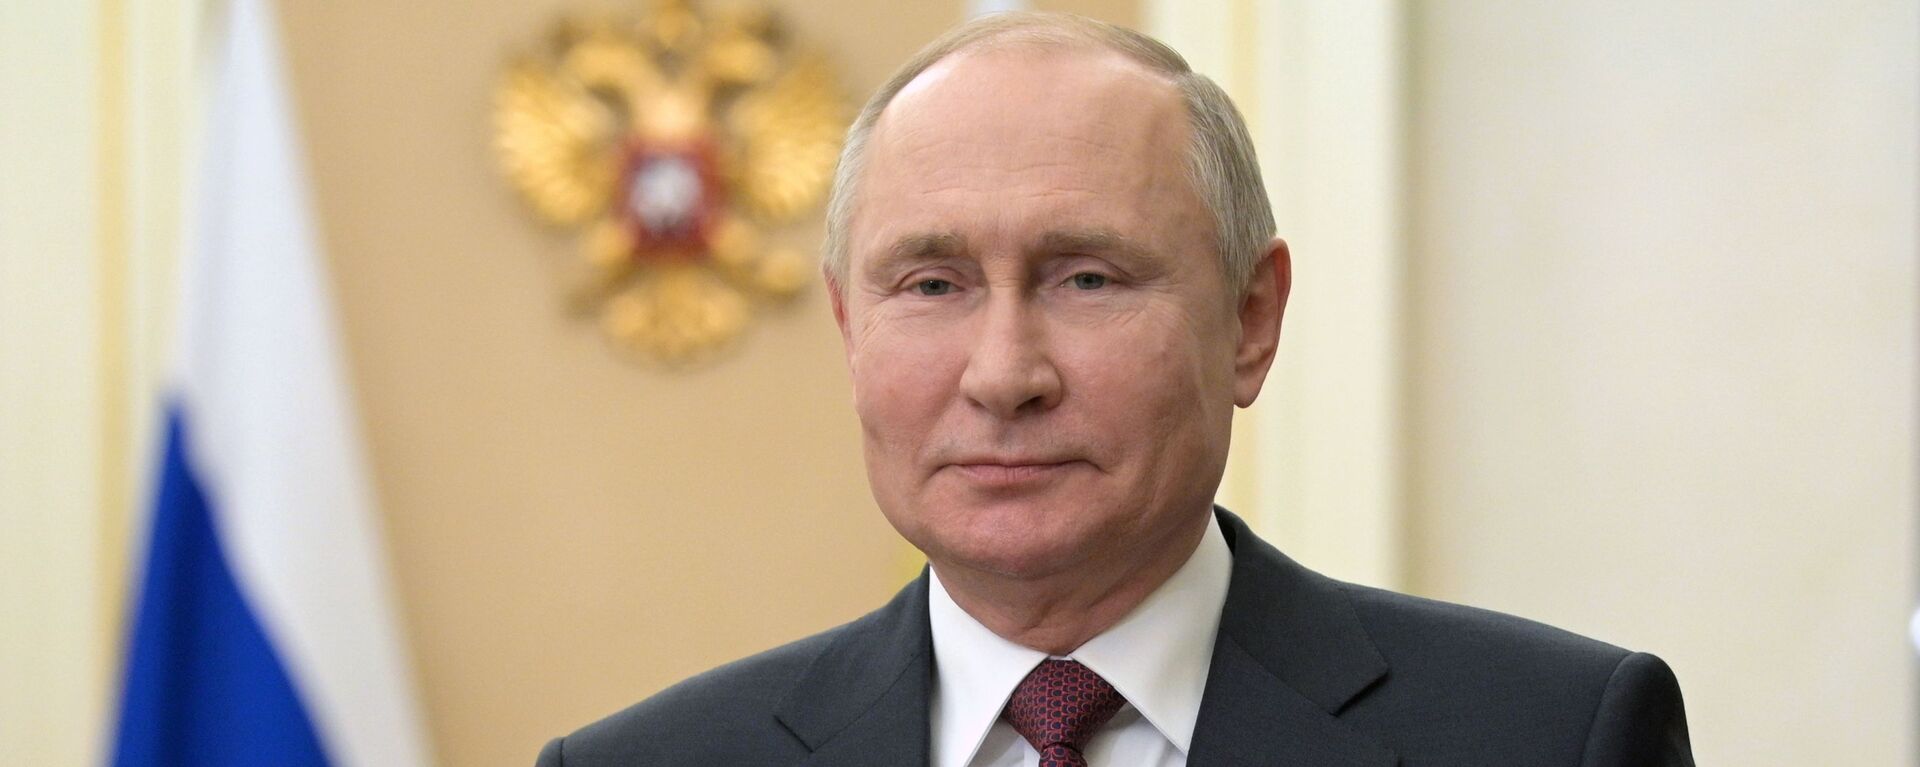 Президент РФ Владимир Путин во время обращения - Sputnik Кыргызстан, 1920, 08.05.2021